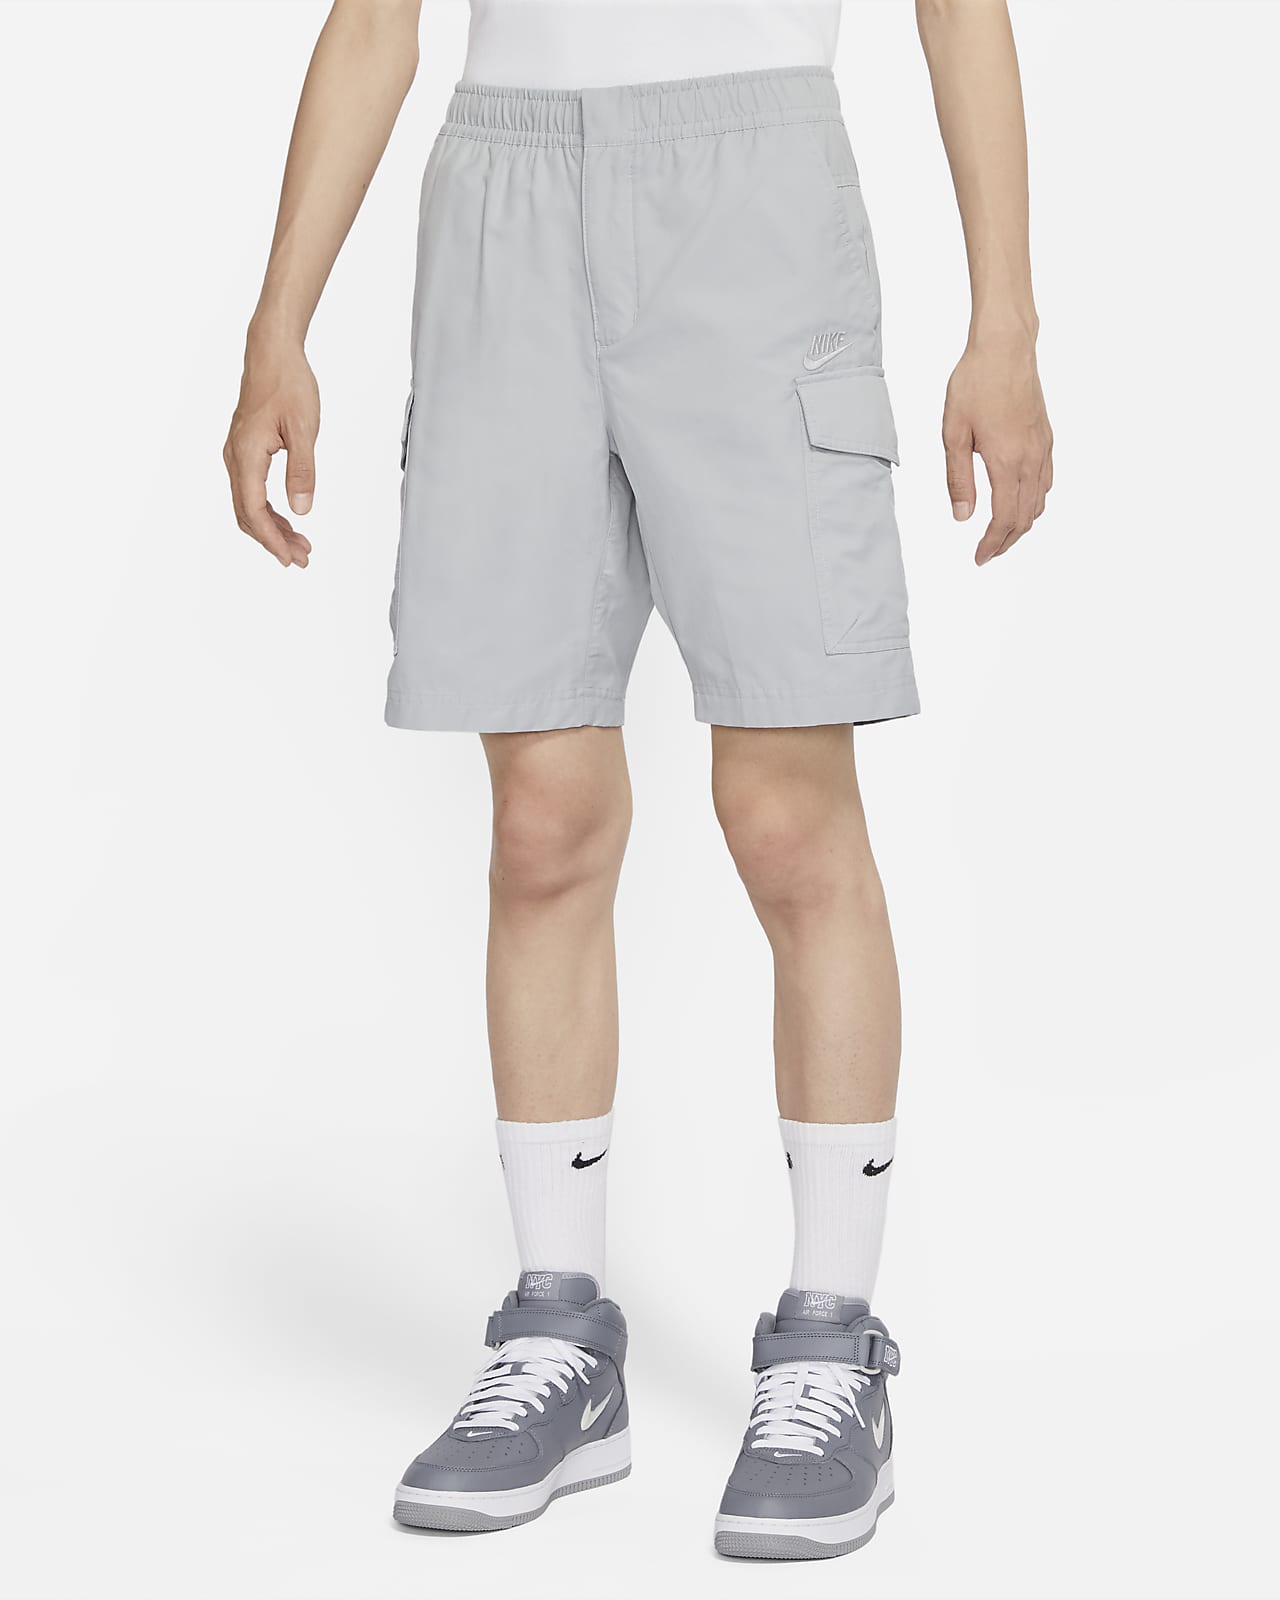 Nike Sportswear Men's Unlined Utility Cargo Shorts